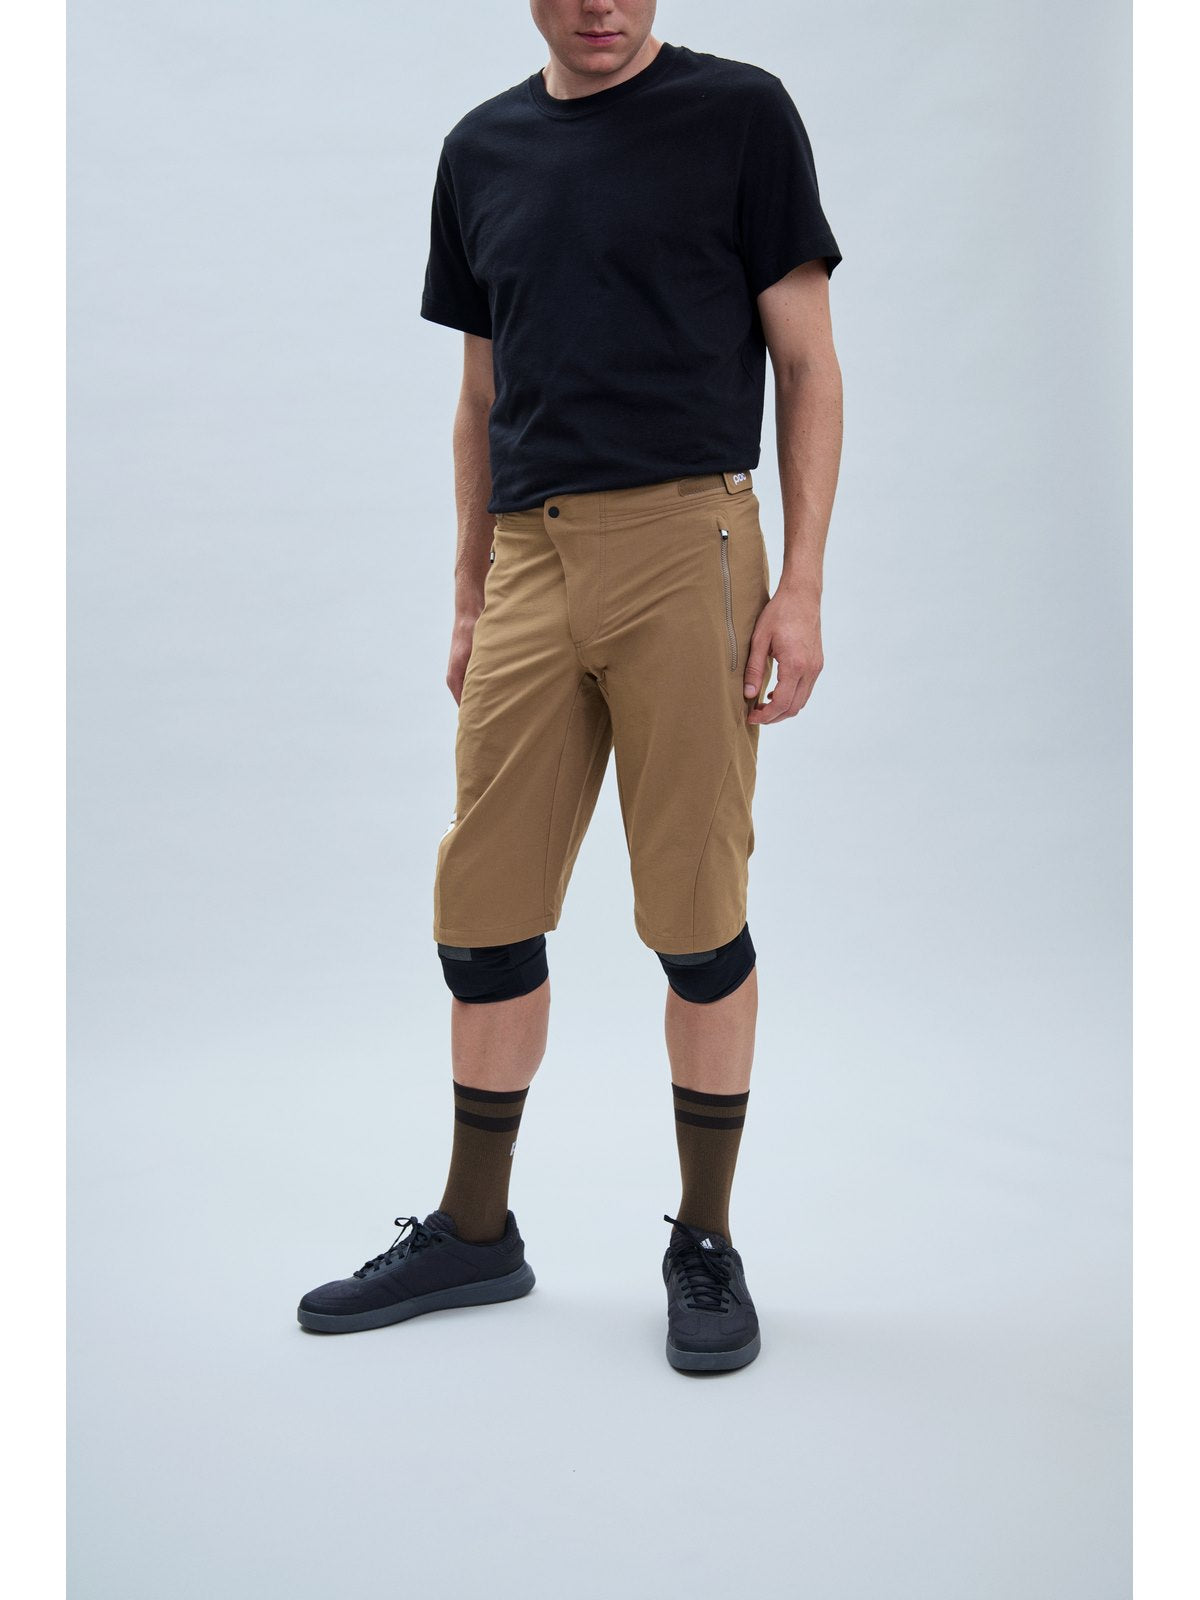 Spodenki rowerowe POC Essential Enduro Shorts brązowy